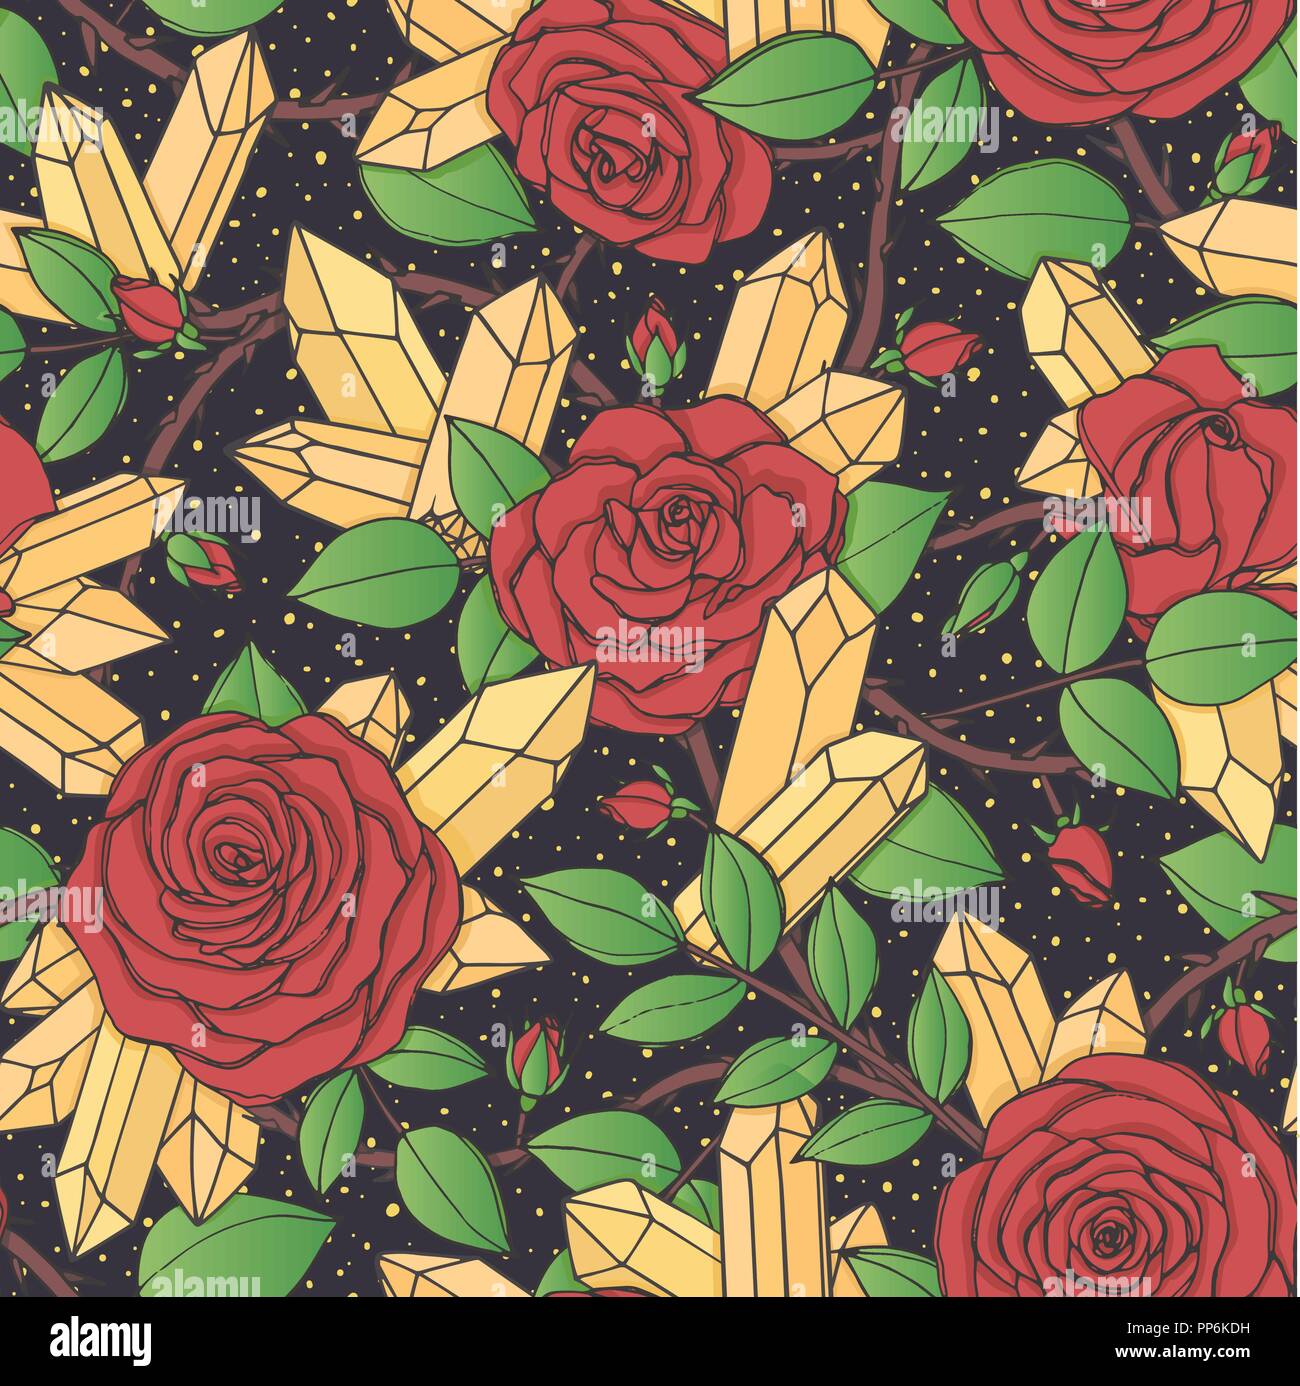 Vector disegnati a mano modello senza giunture di red rose fiori con boccioli, foglie e steli spinosi e cristalli sul nero sfondo tratteggiato. Ornamento floreale di Illustrazione Vettoriale